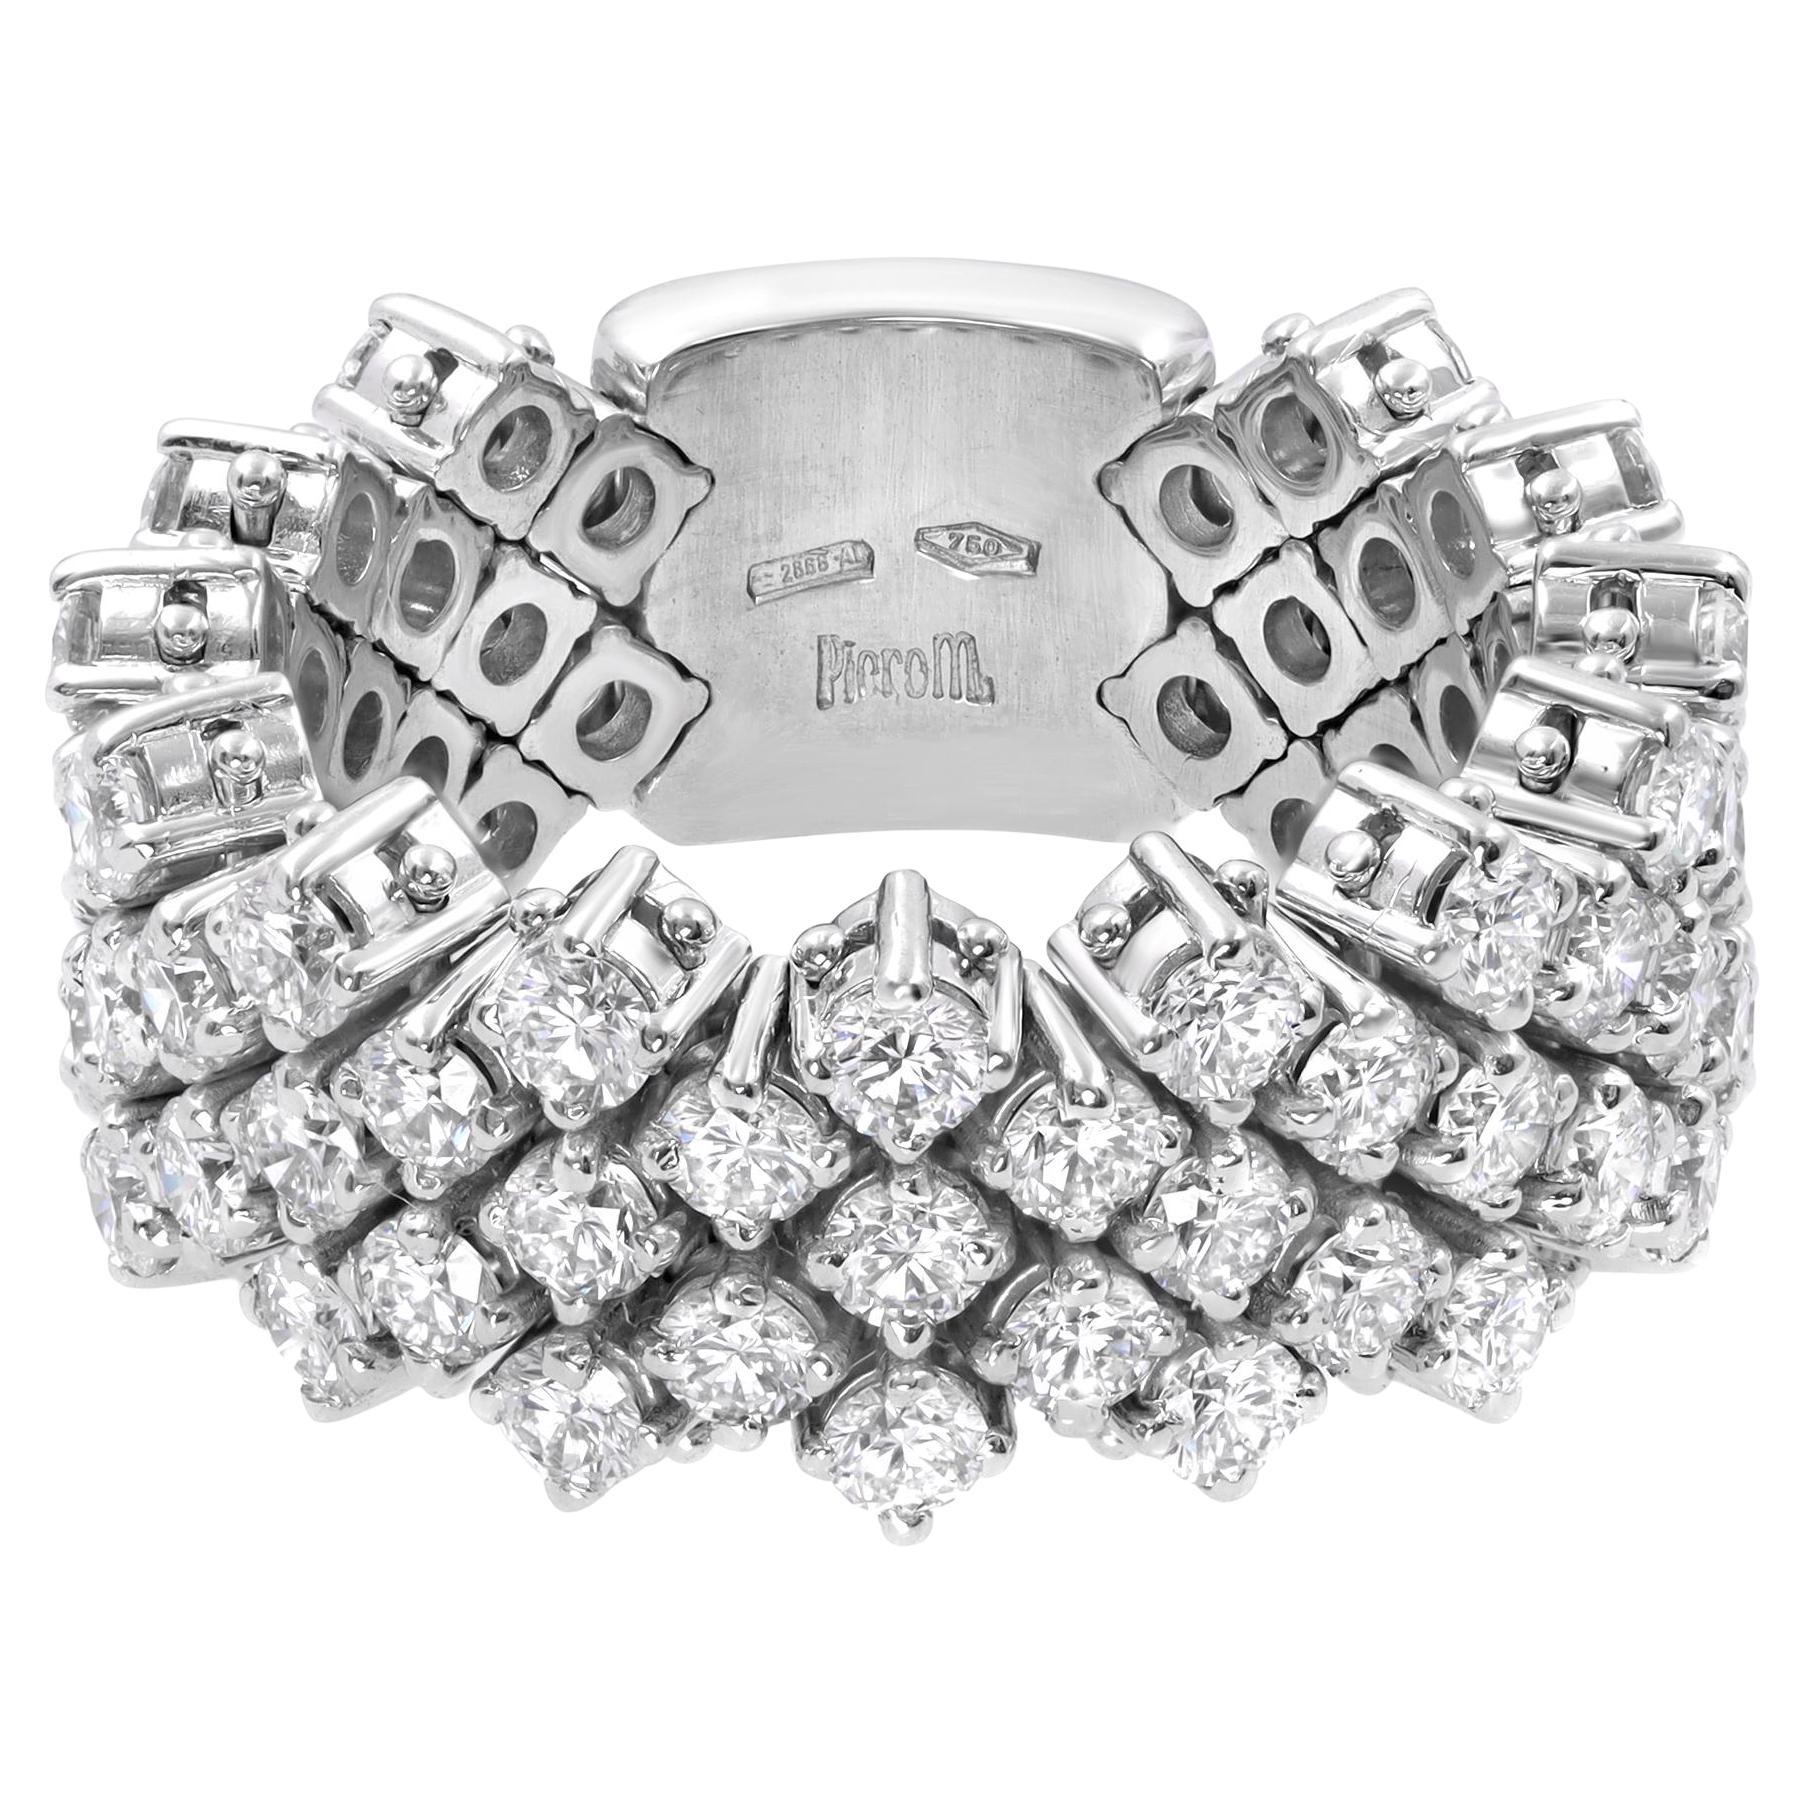 Piero Milano Natural Diamond Flexible Ring 18k White Gold 3.48cttw